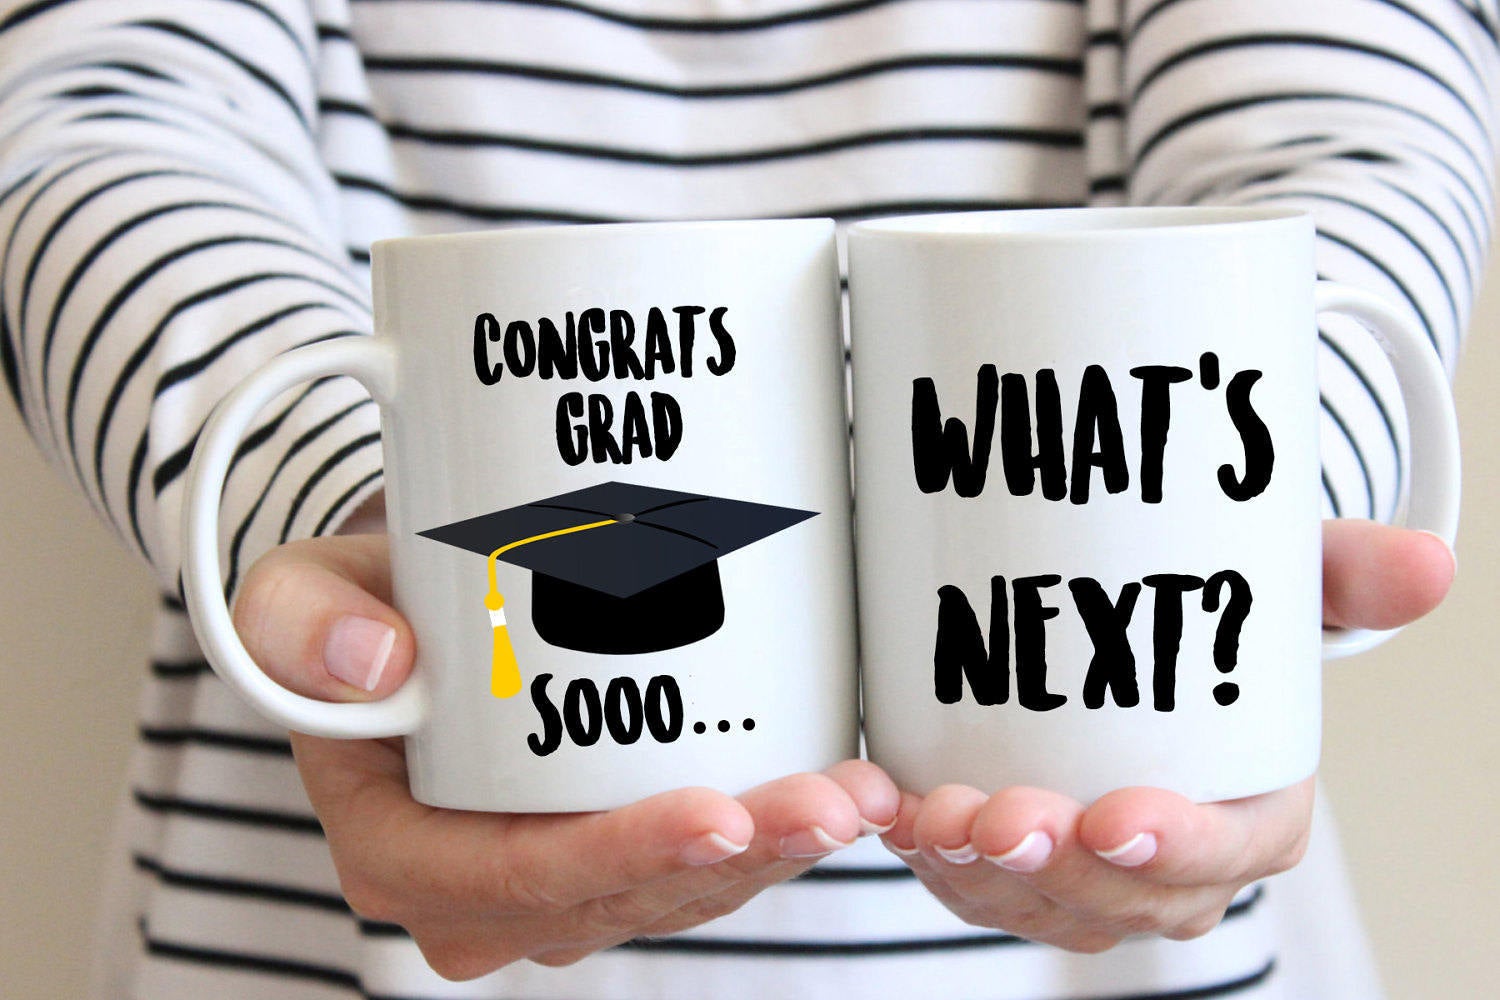 Congrats Grad What's Next? - Graduation Mug